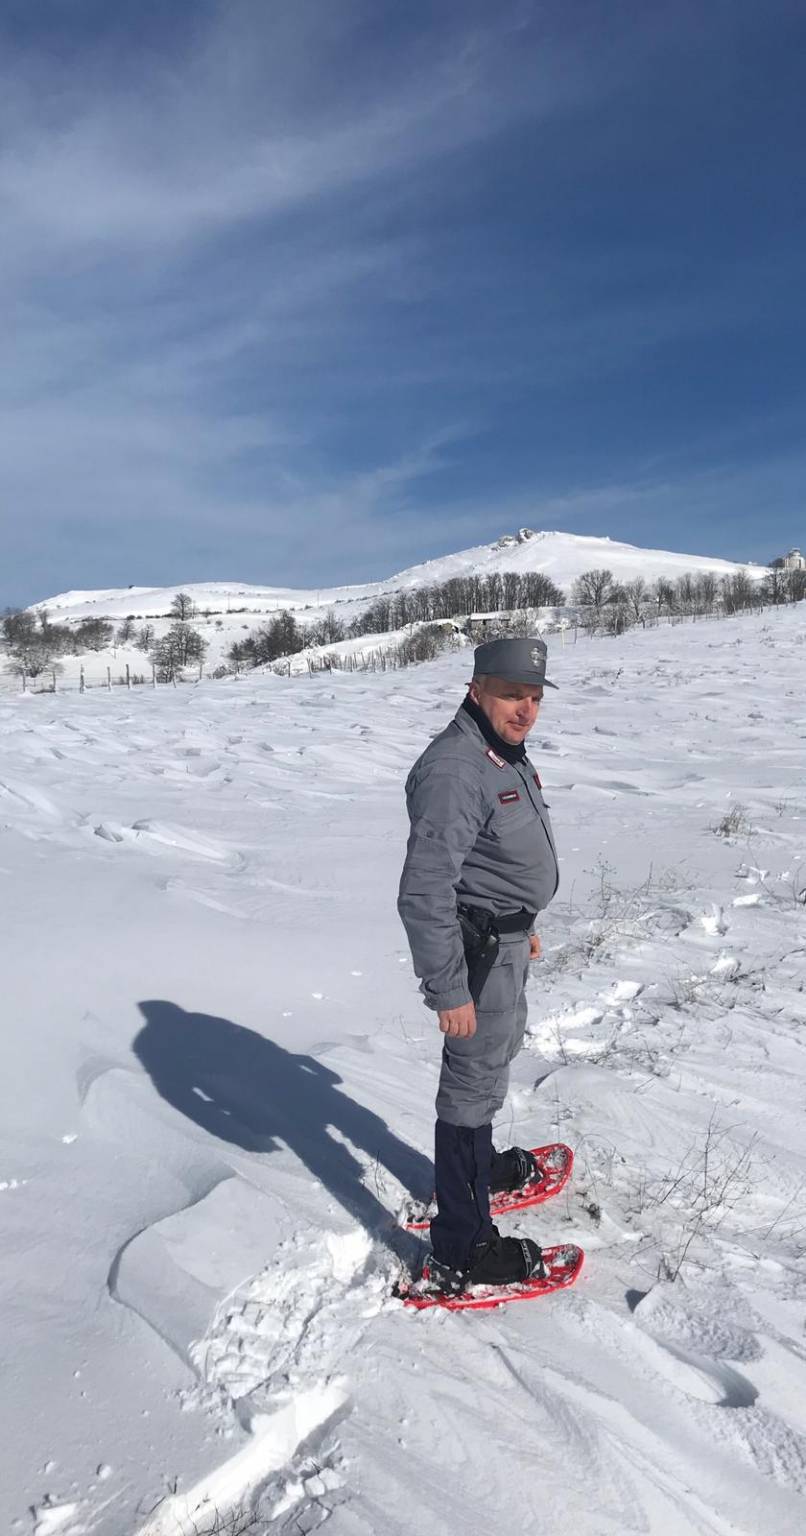 Castelgrande: anziano isolato a causa delle neve, soccorso dai Carabinieri forestali